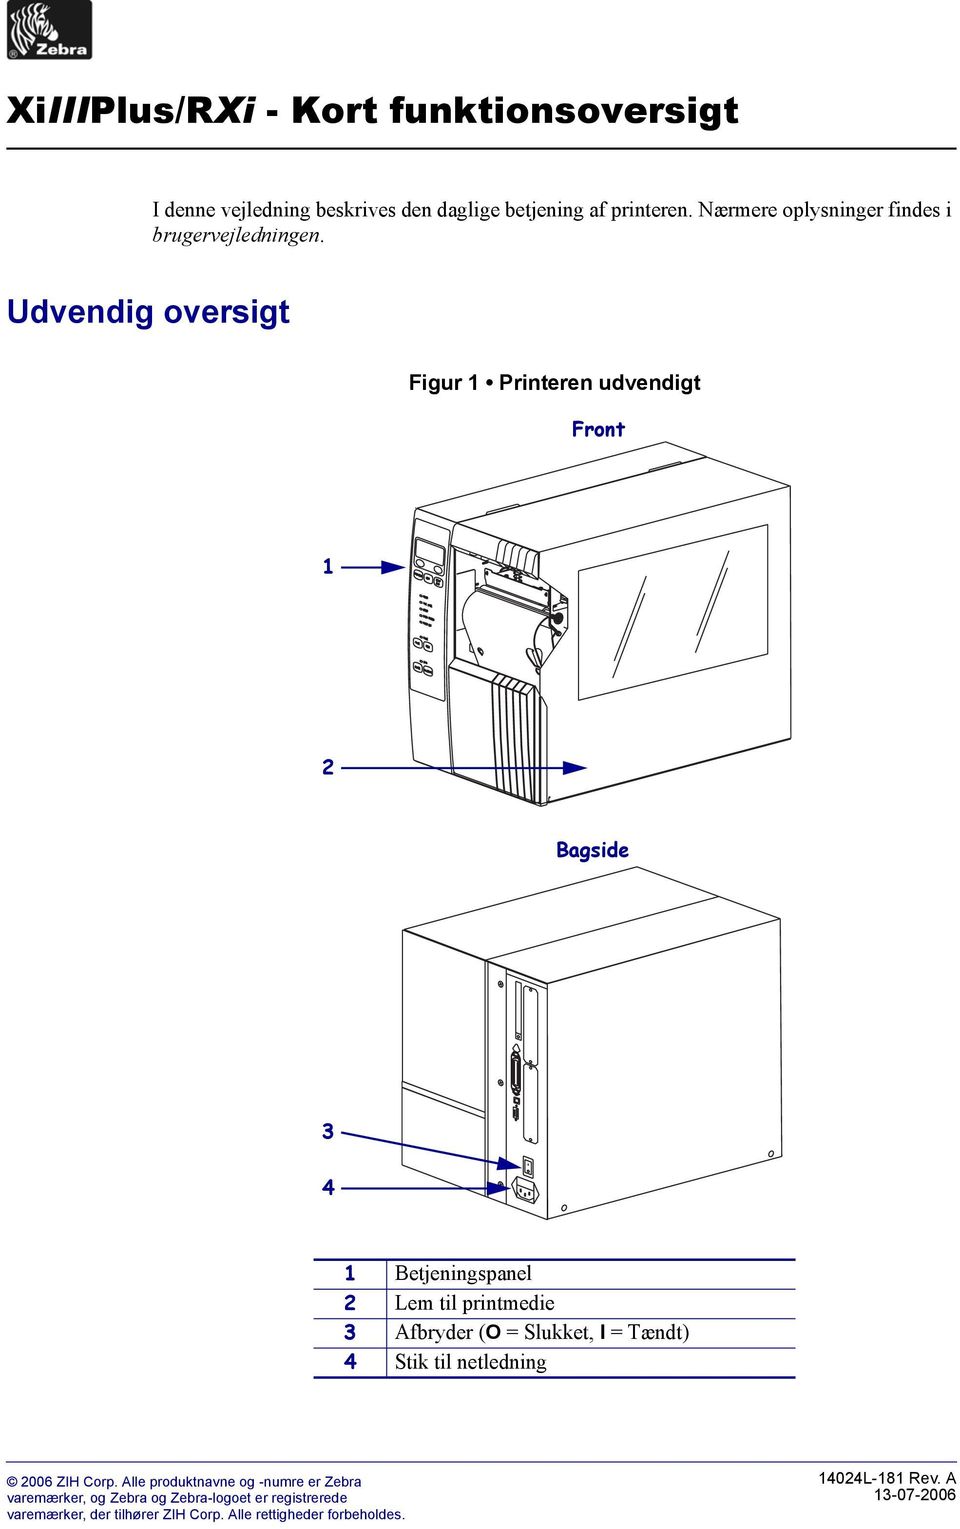 Udvendig oversigt Figur Printeren udvendigt Front Bagside 3 4 Betjeningspanel Lem til printmedie 3 Afbryder (O = Slukket, I